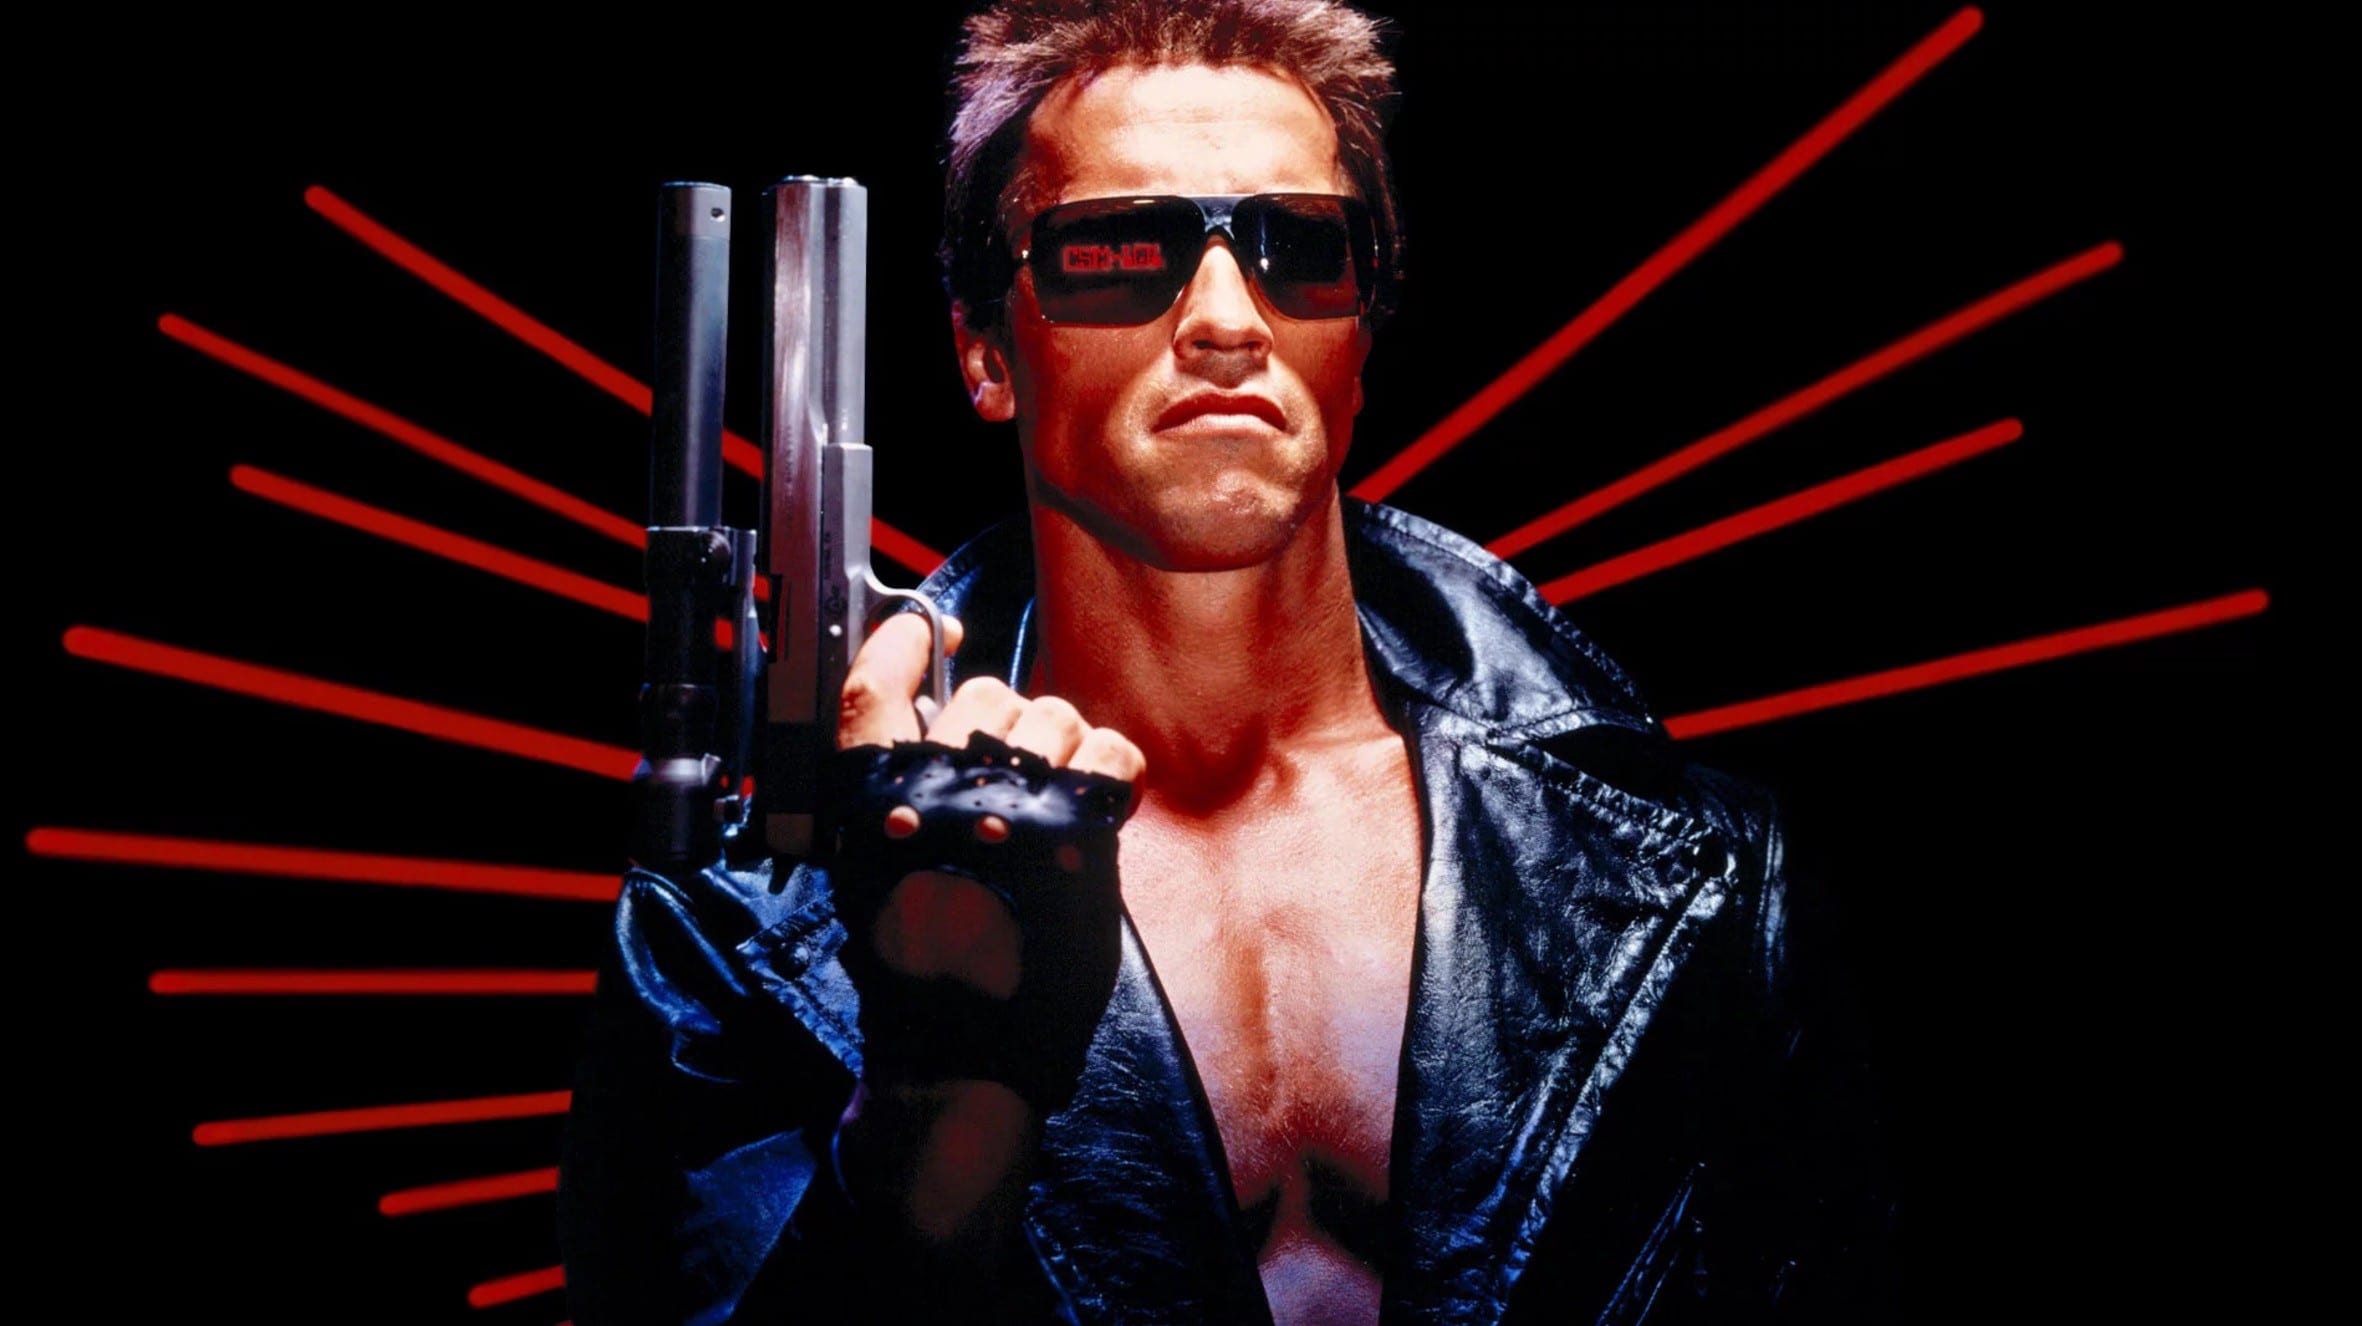 Terminator - James Cameron dichiara: "Vi avevo avvertito sull'IA"